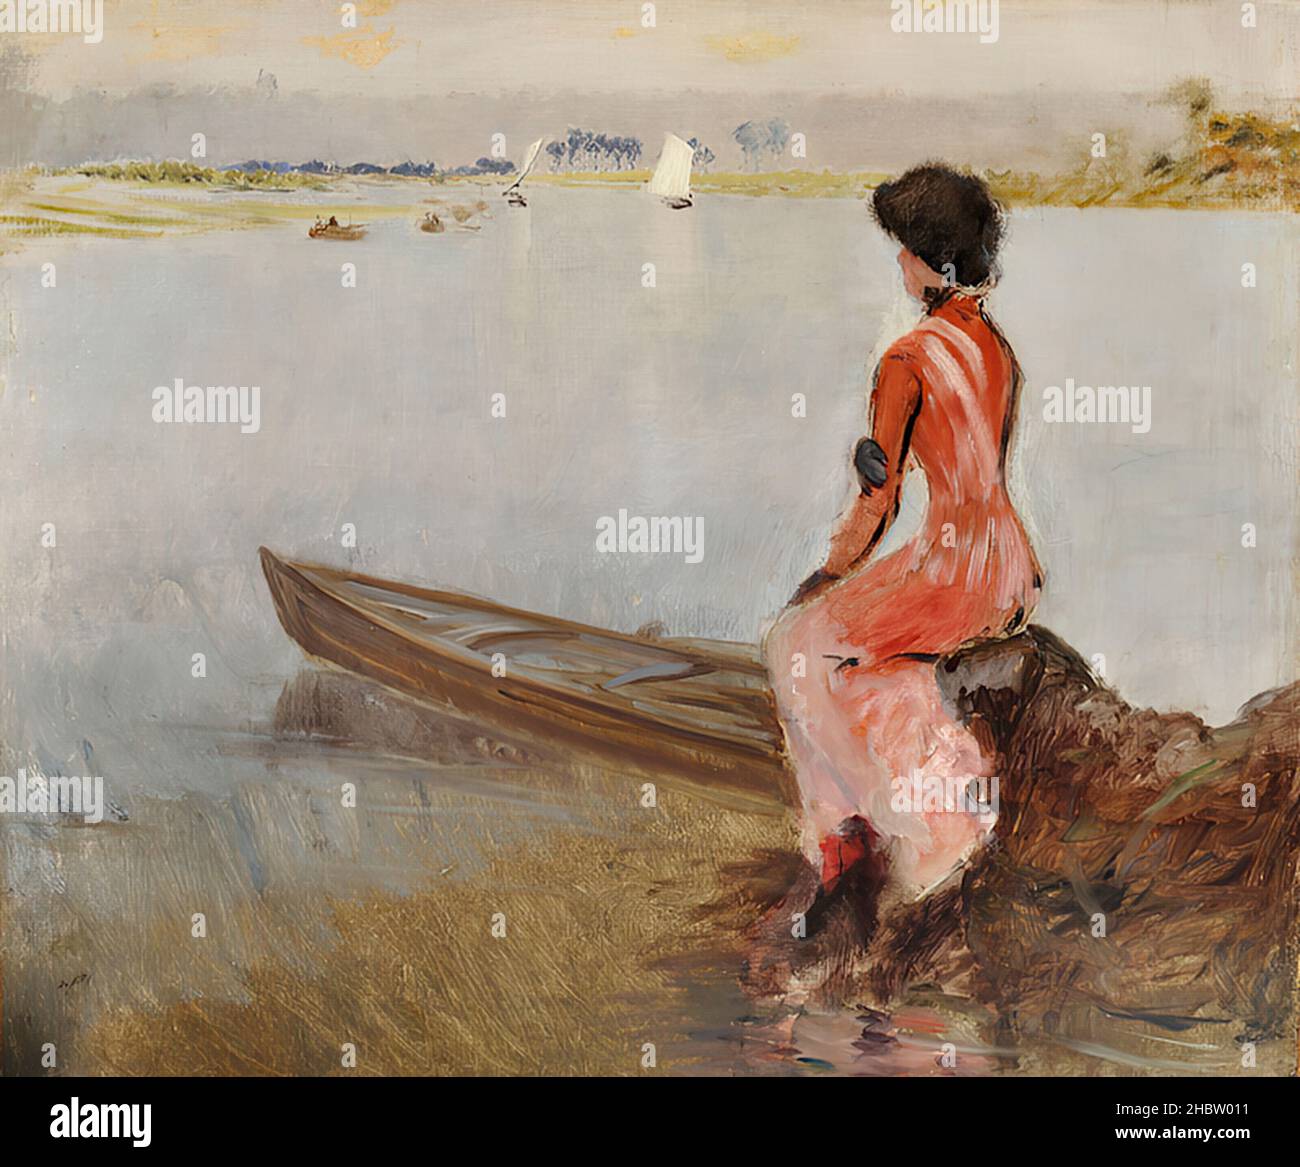 De Nittis Giuseppe - Collection privée - à riva al lago - 1875 - huile sur toile 64 x 75,5 cm - Banque D'Images